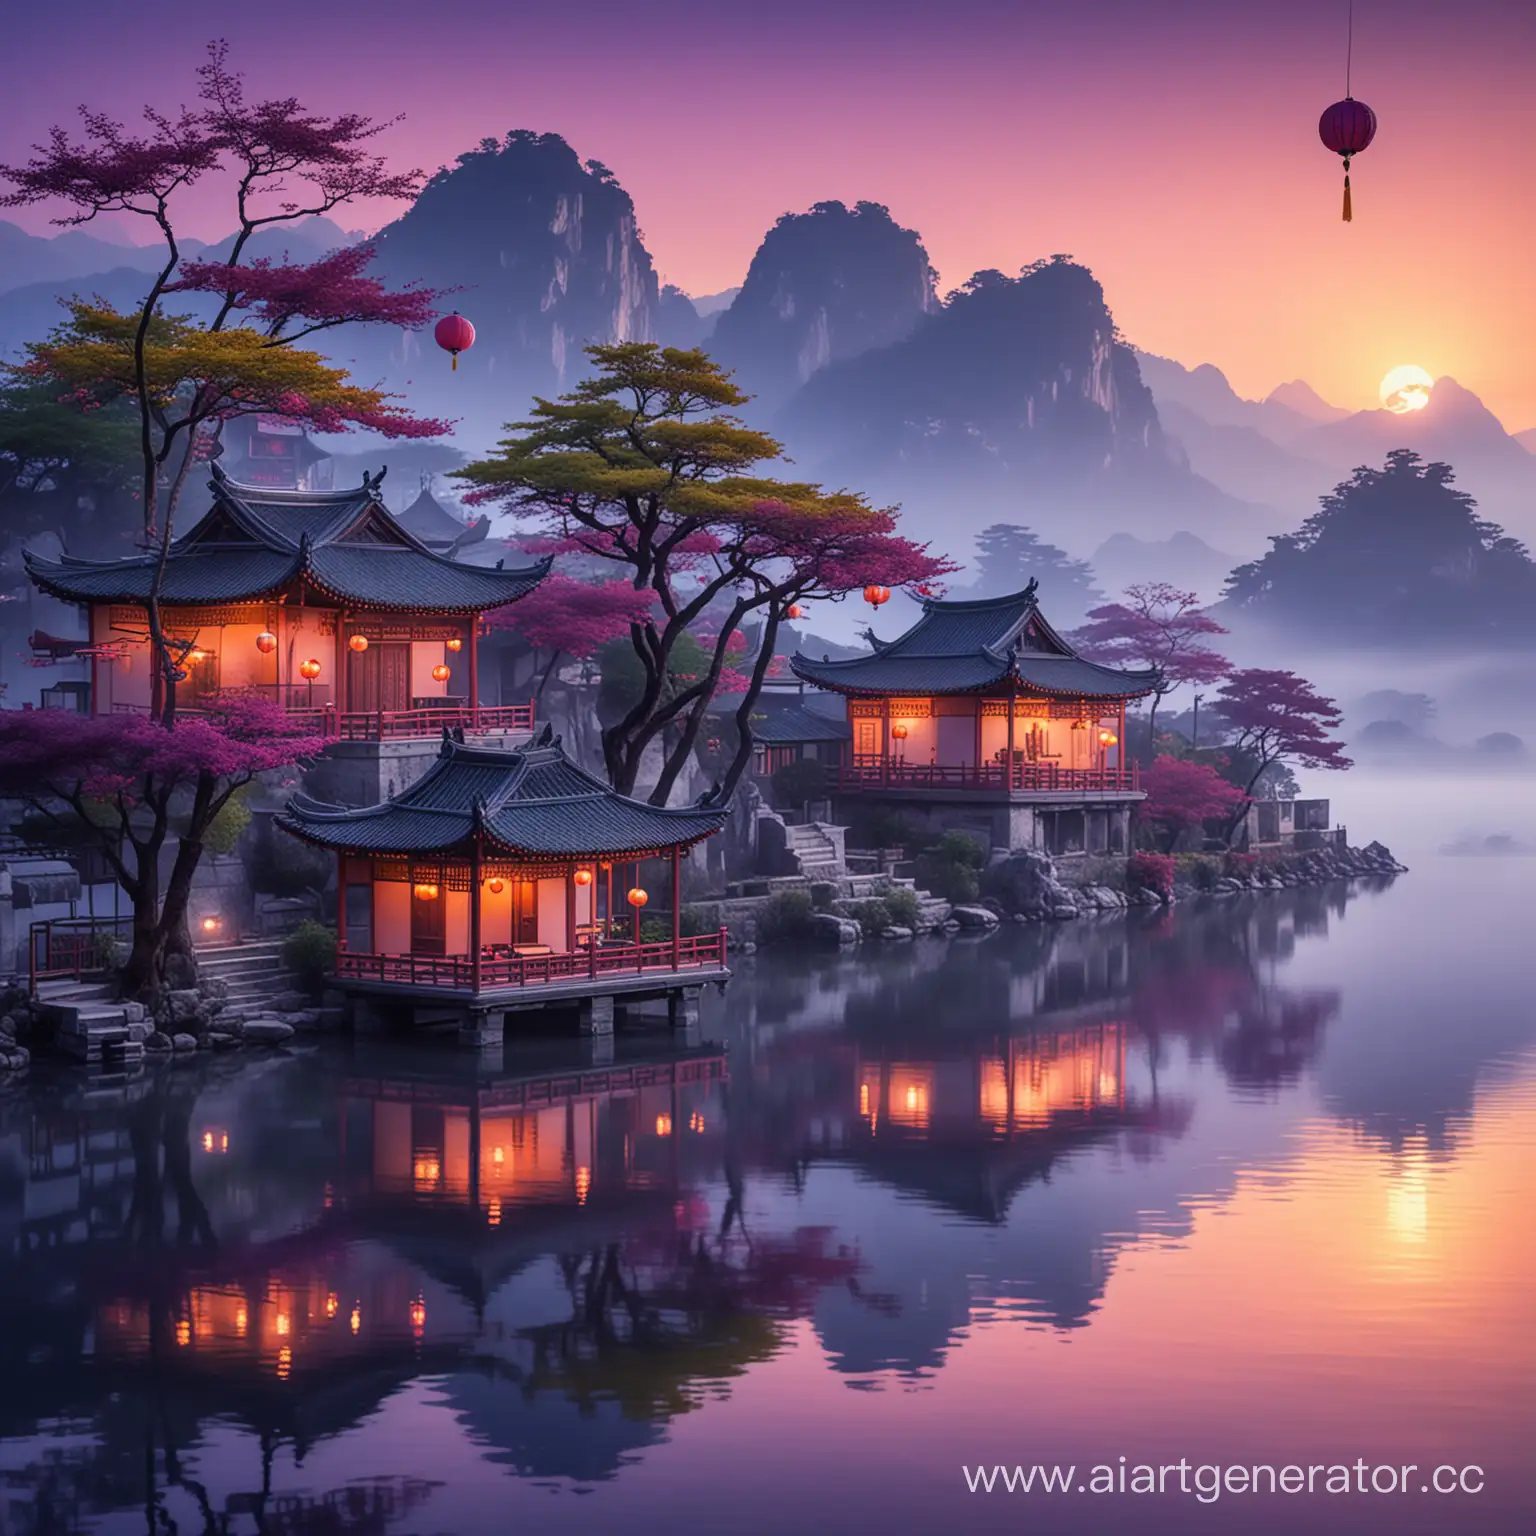 острова на воде, китайские дома и деревья, туман скрывает горы, китайски фонари шелковые на воде, фиолетовые тона, закат, средневековая япония